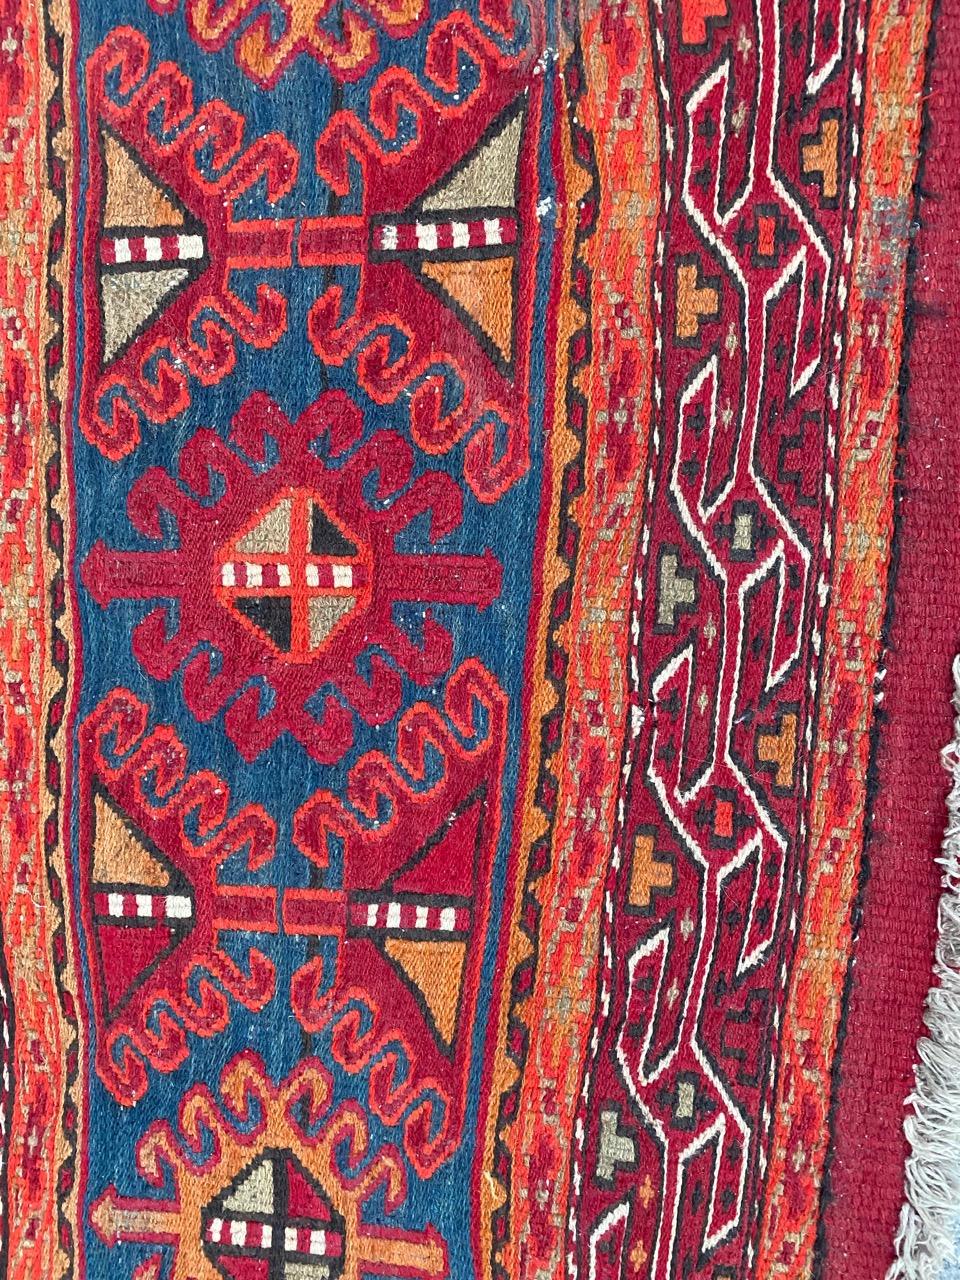 Magnifique Kilim shahsavand du milieu du siècle avec de jolis motifs géométriques et tribaux et de belles couleurs, entièrement tissé et brodé à la main avec de la laine sur une base de coton.

✨✨✨
